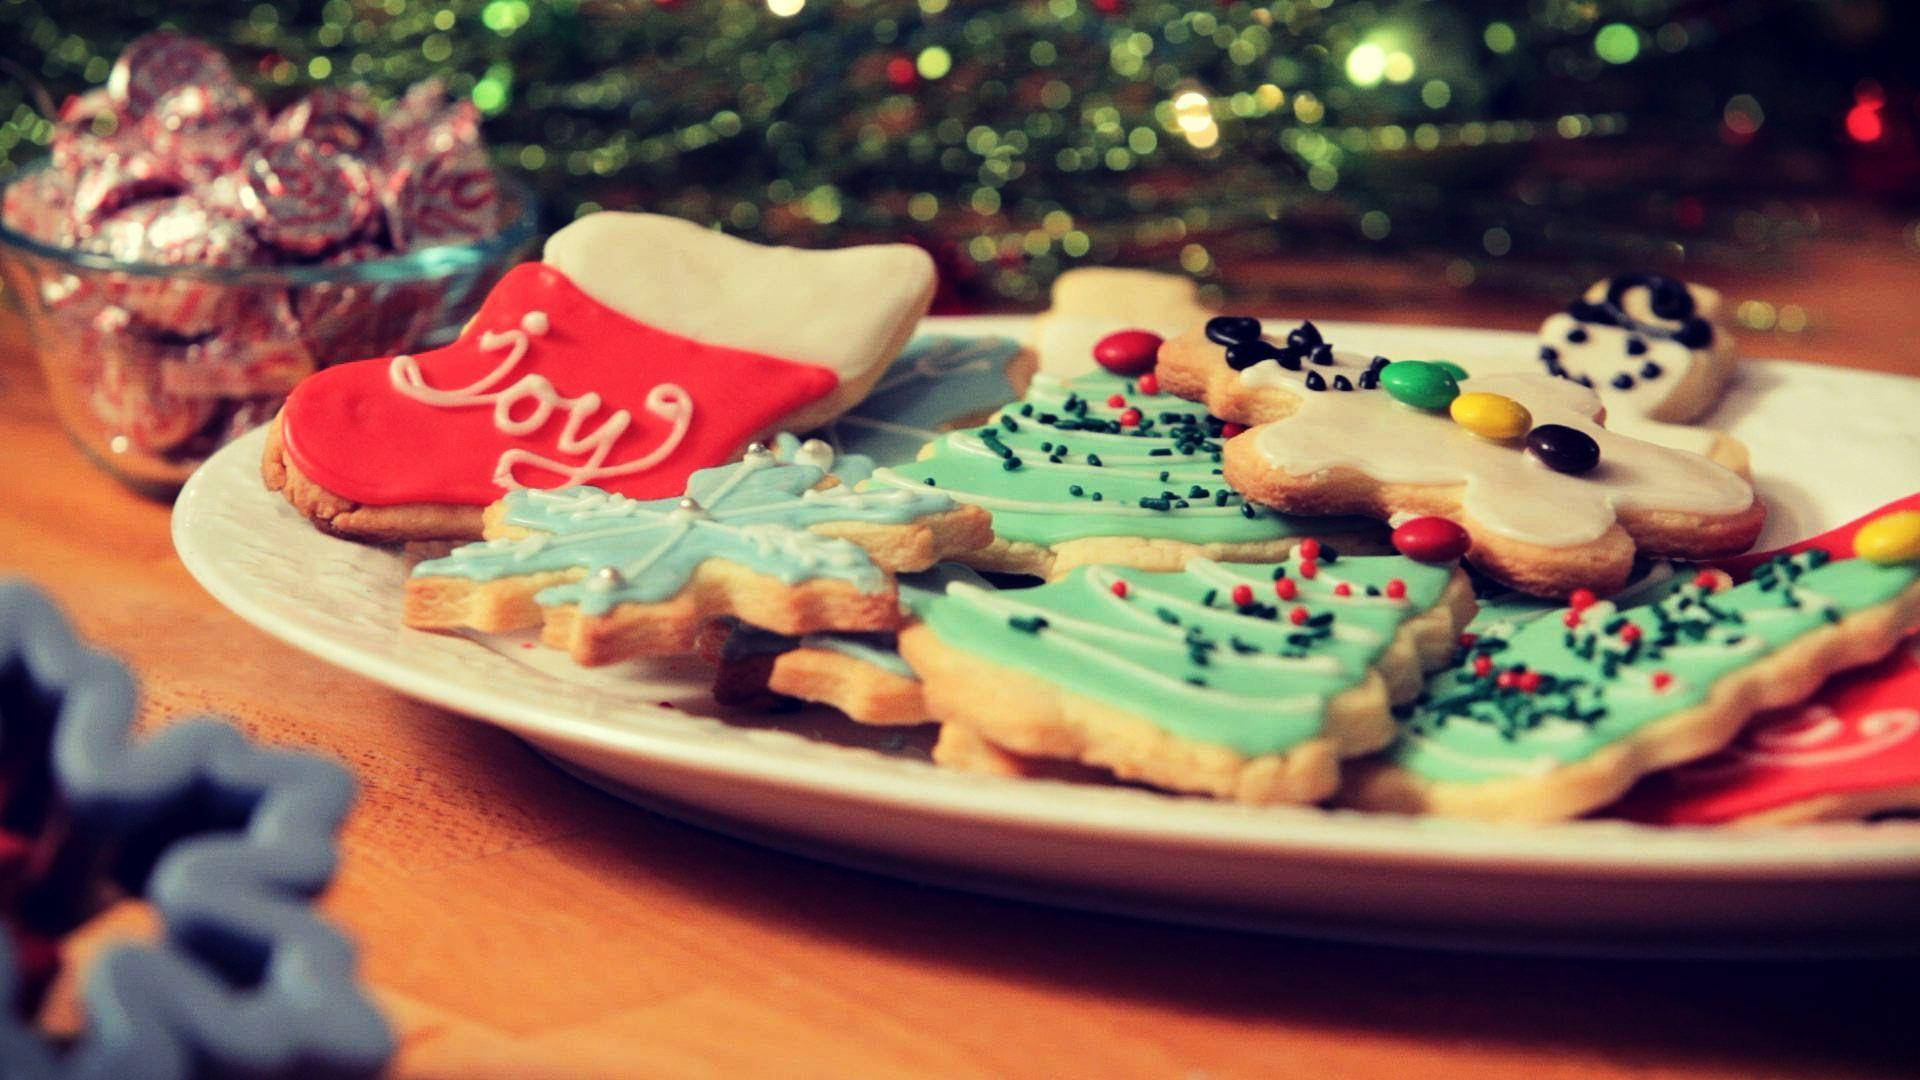 Joyful Christmas Cookies